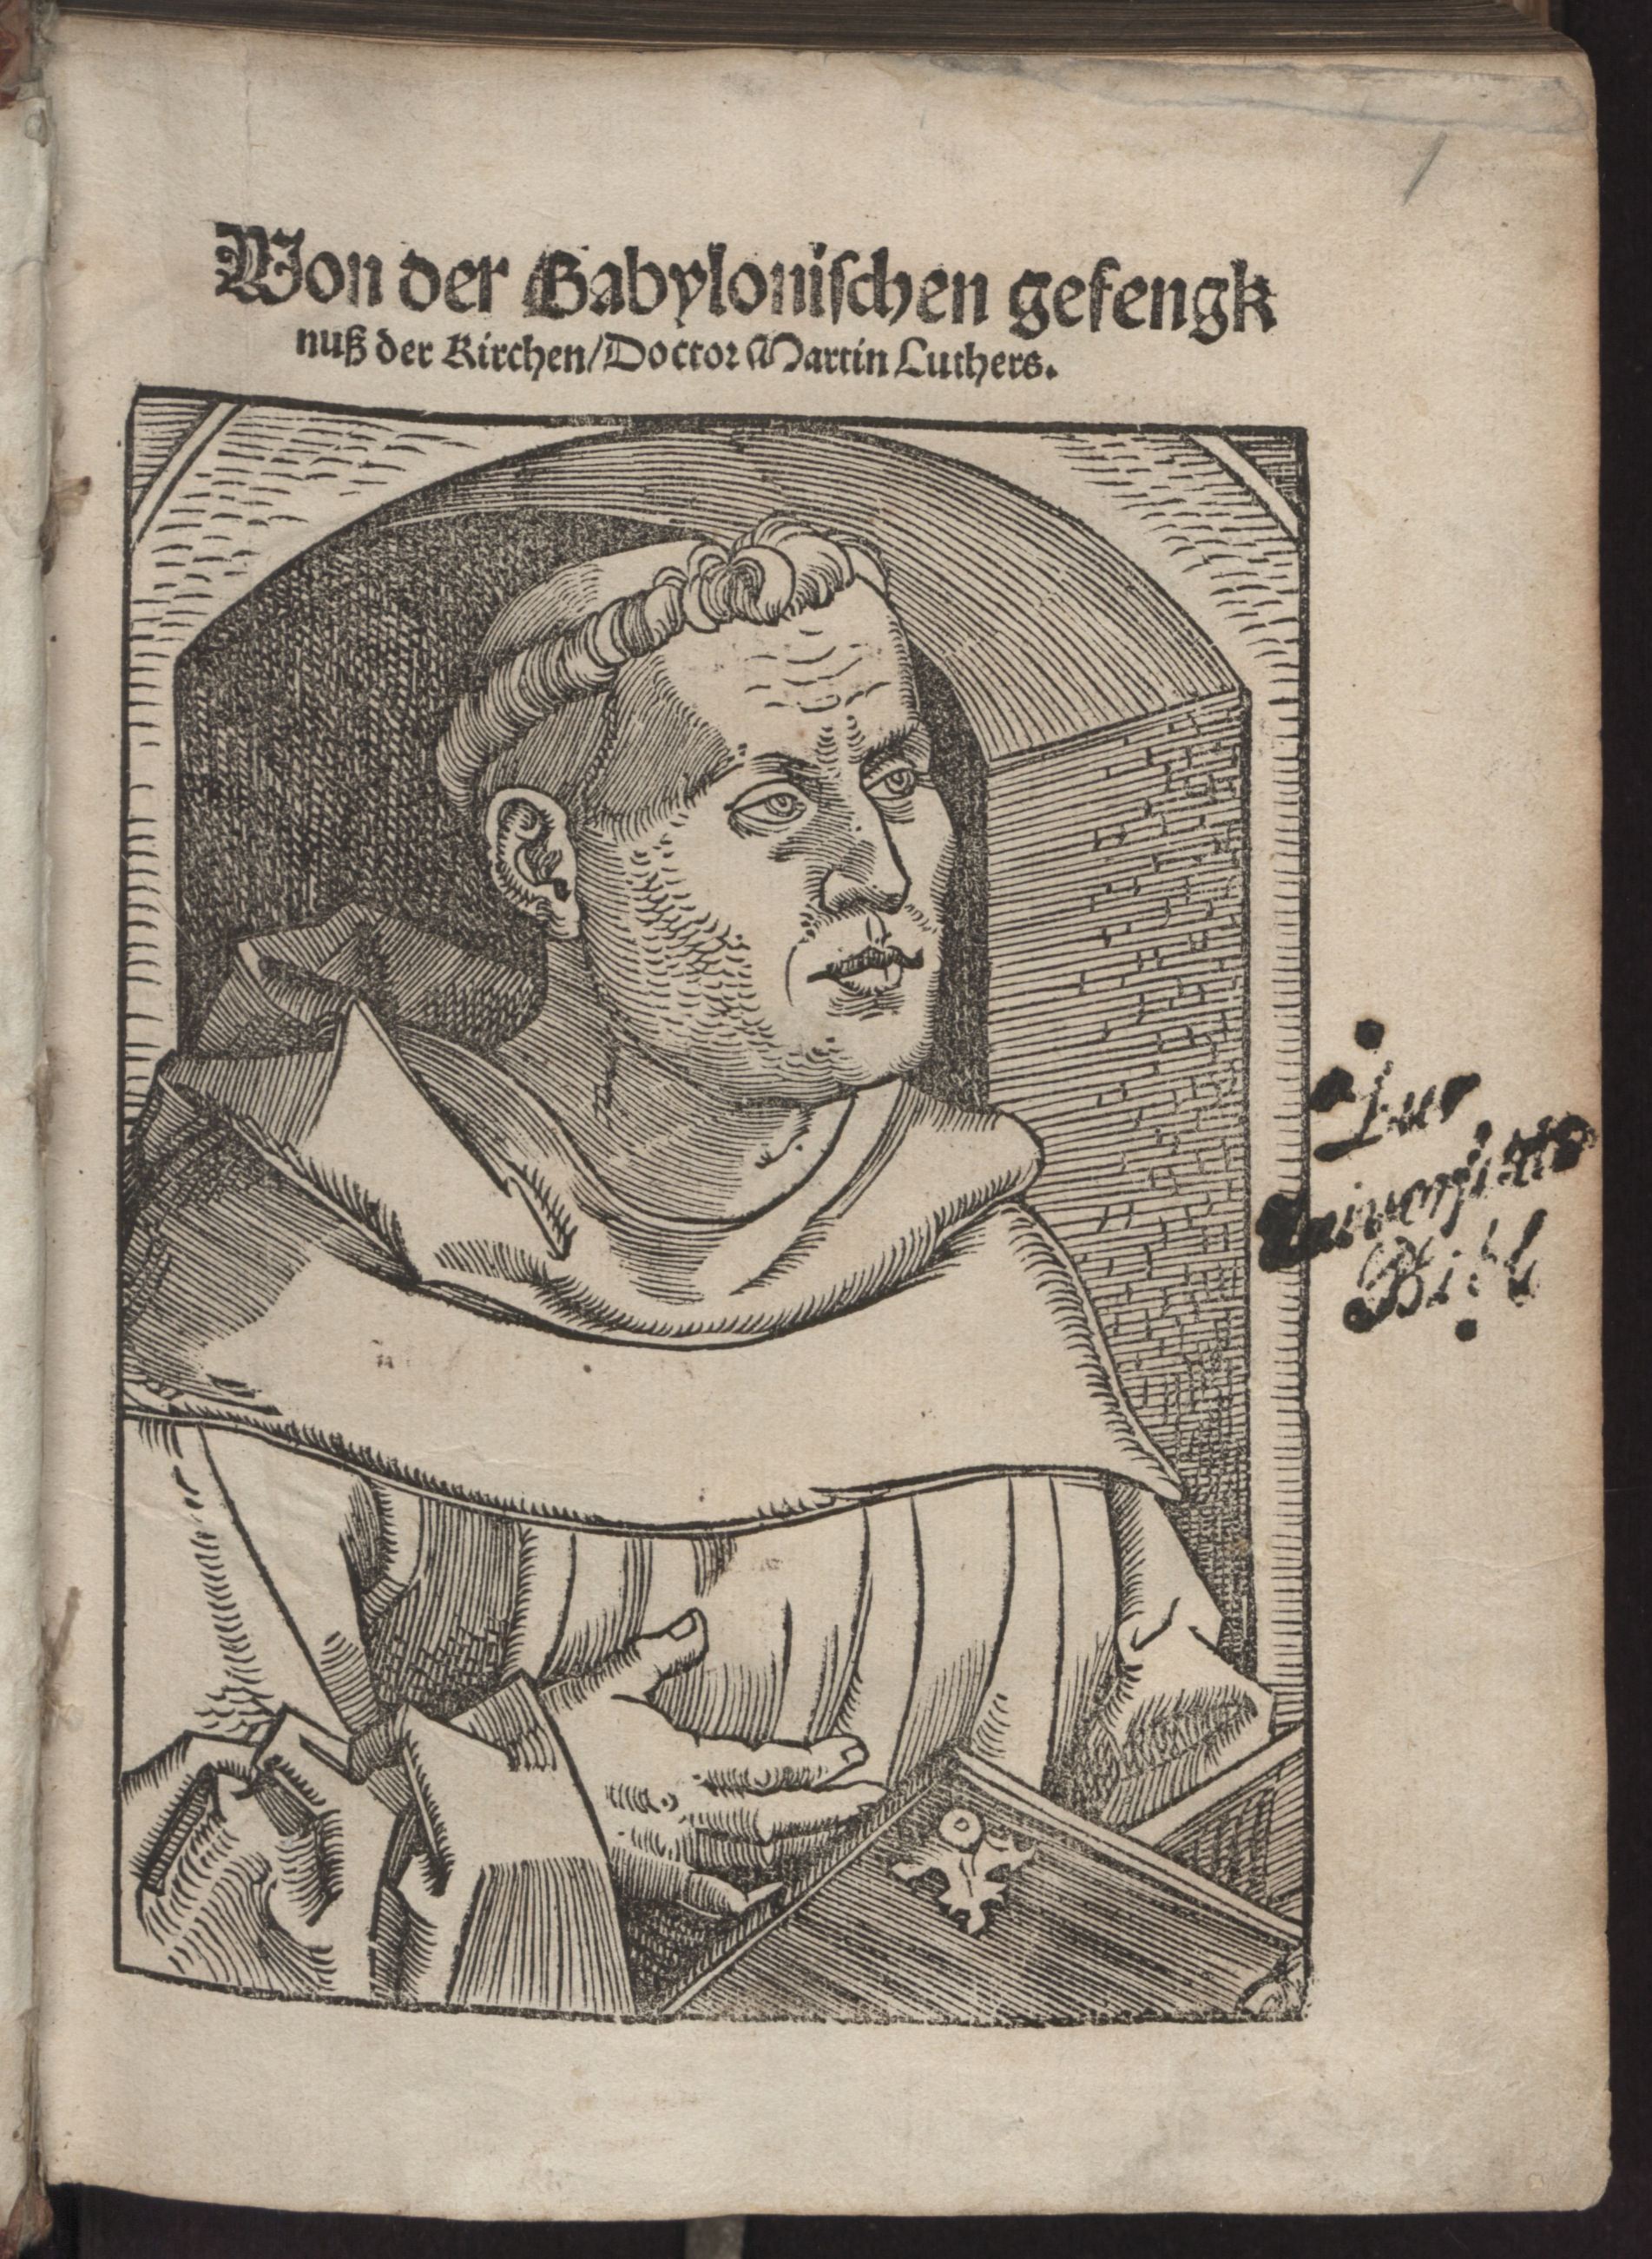 Luther, Martin (1483–1546). Von der Babylonischen gefengknuß der Kirchen (1520)